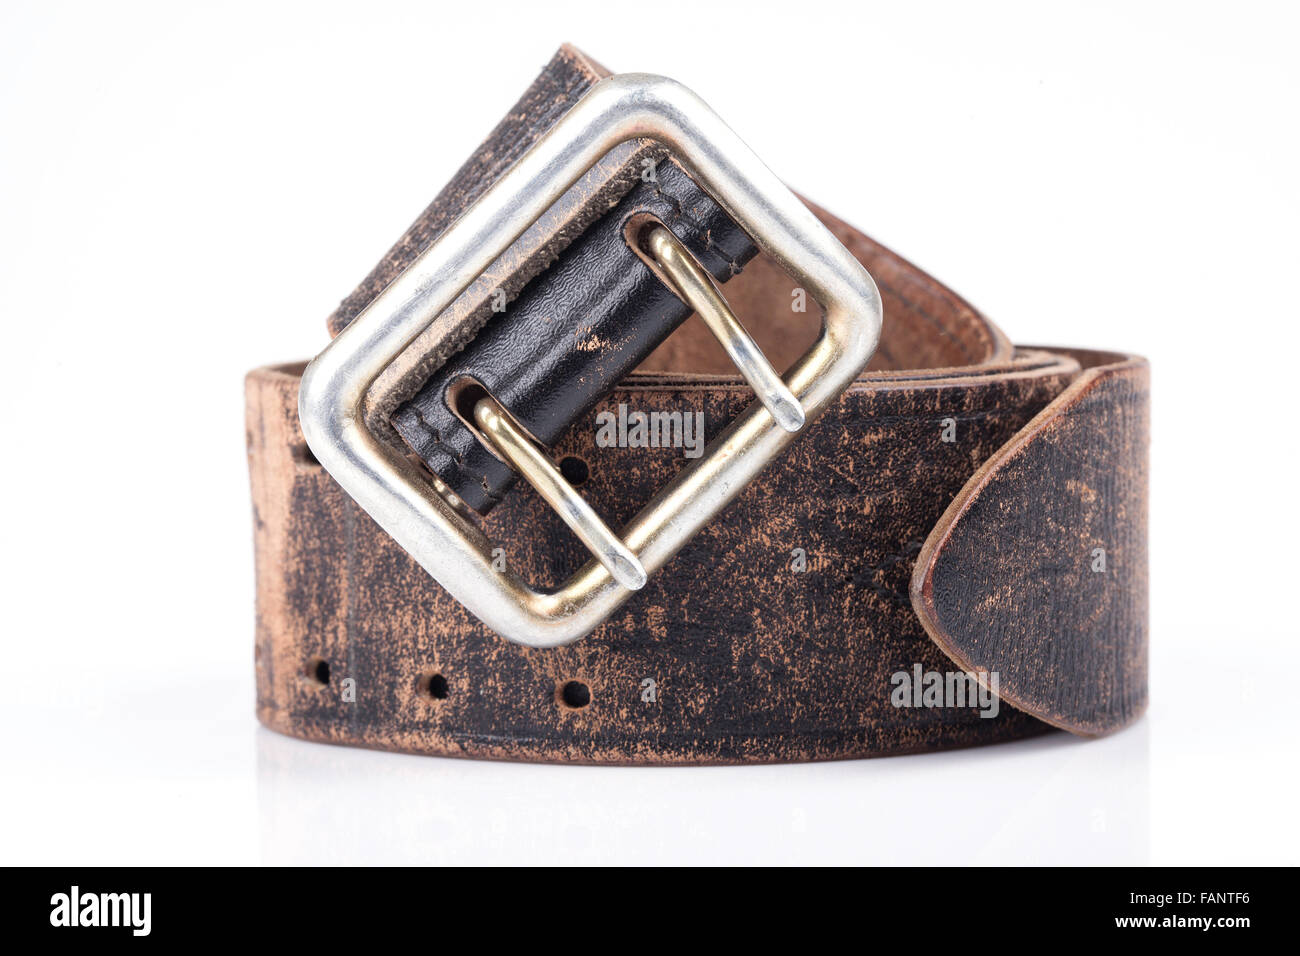 Vieille ceinture en cuir Banque d'images détourées - Alamy